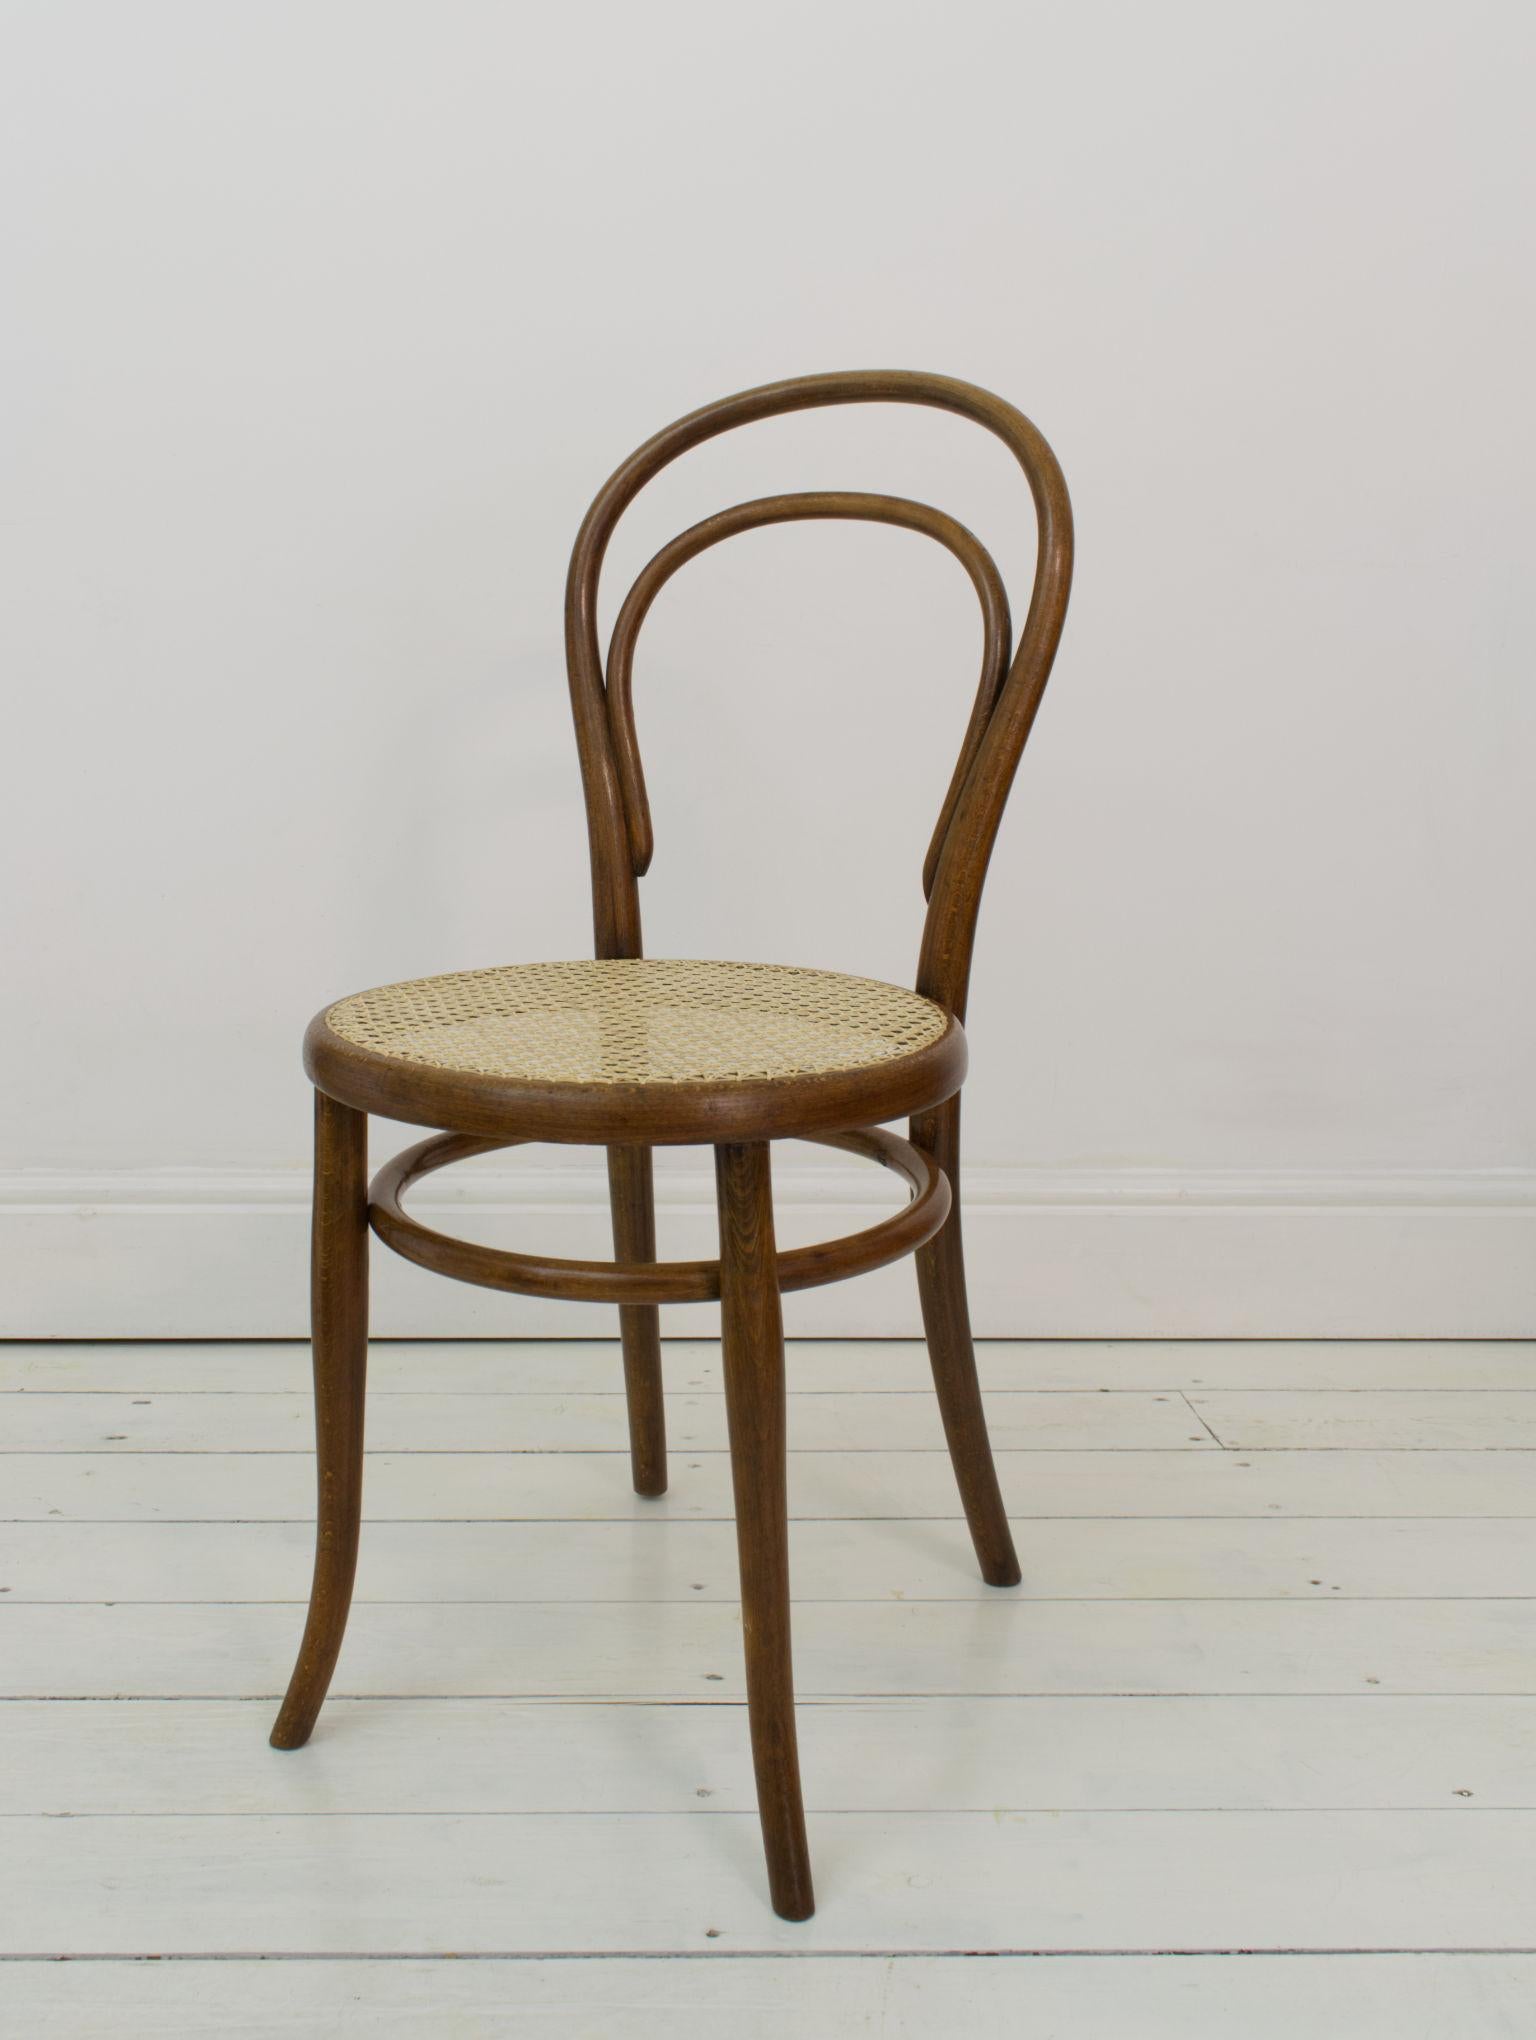 Ein frühes Exemplar des berühmtesten Stuhls von Thonet, mit einem originalen Label, das auf die Jahre 1890-1910 datiert wird. Diese Stühle sind außerdem auf der Rückseite der Sitzfläche mit dem mysteriösen Schriftzug P.V.C. versehen, obwohl wir